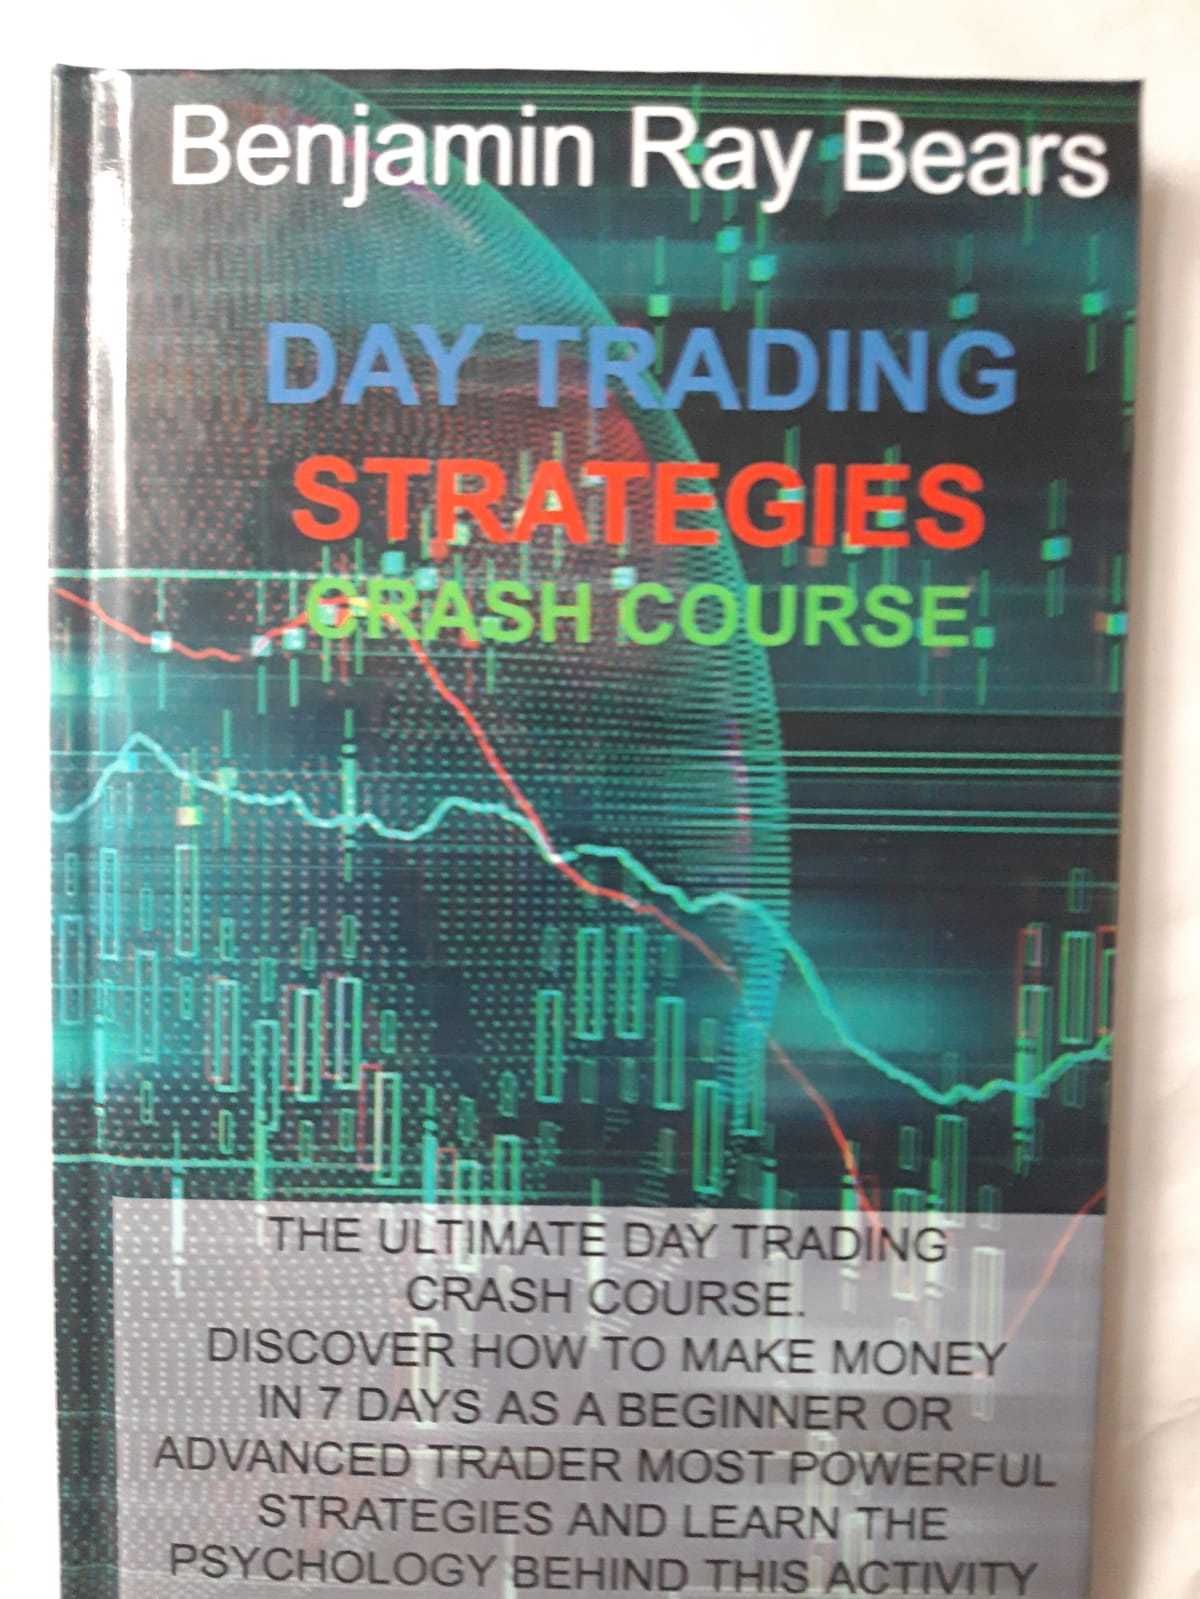 Day Trading Strategies.  Benjamin Ray Bears